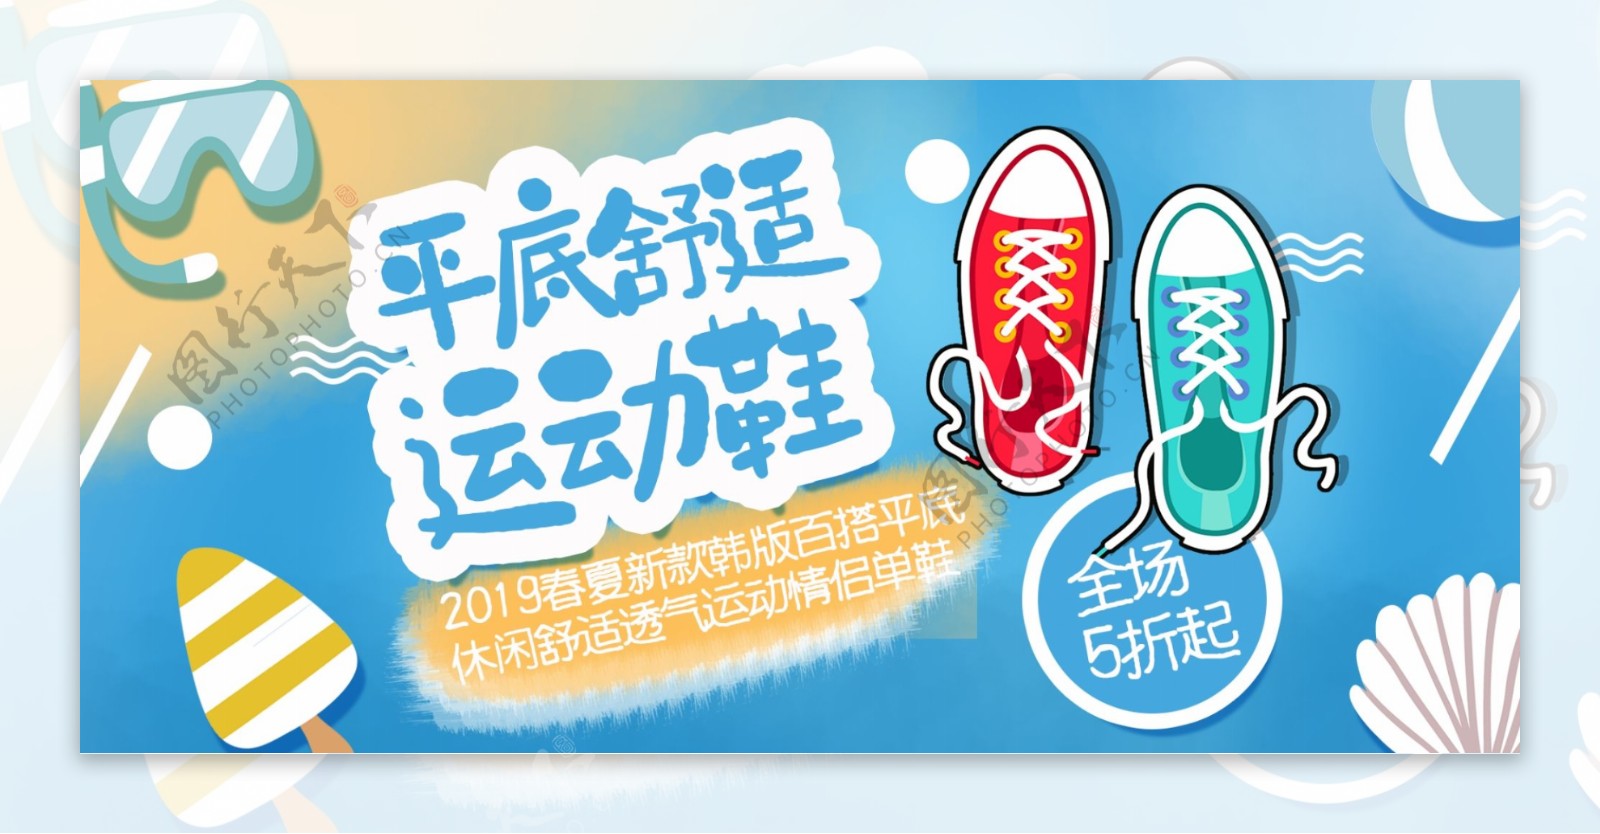 电商banner简约清新卡通可爱运动鞋